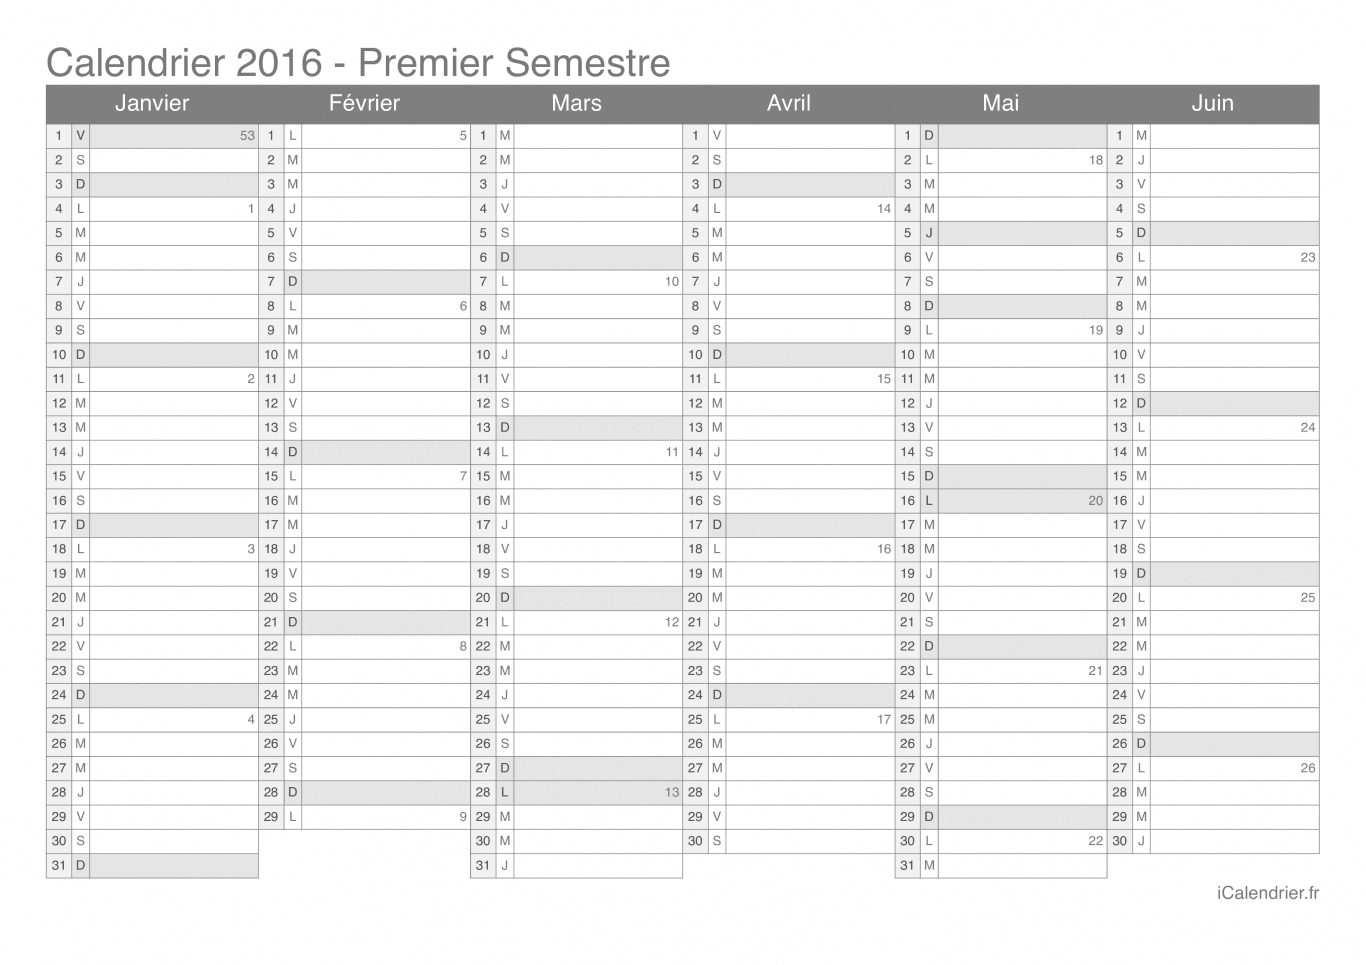 Calendrier par semestre avec numéros des semaines 2016